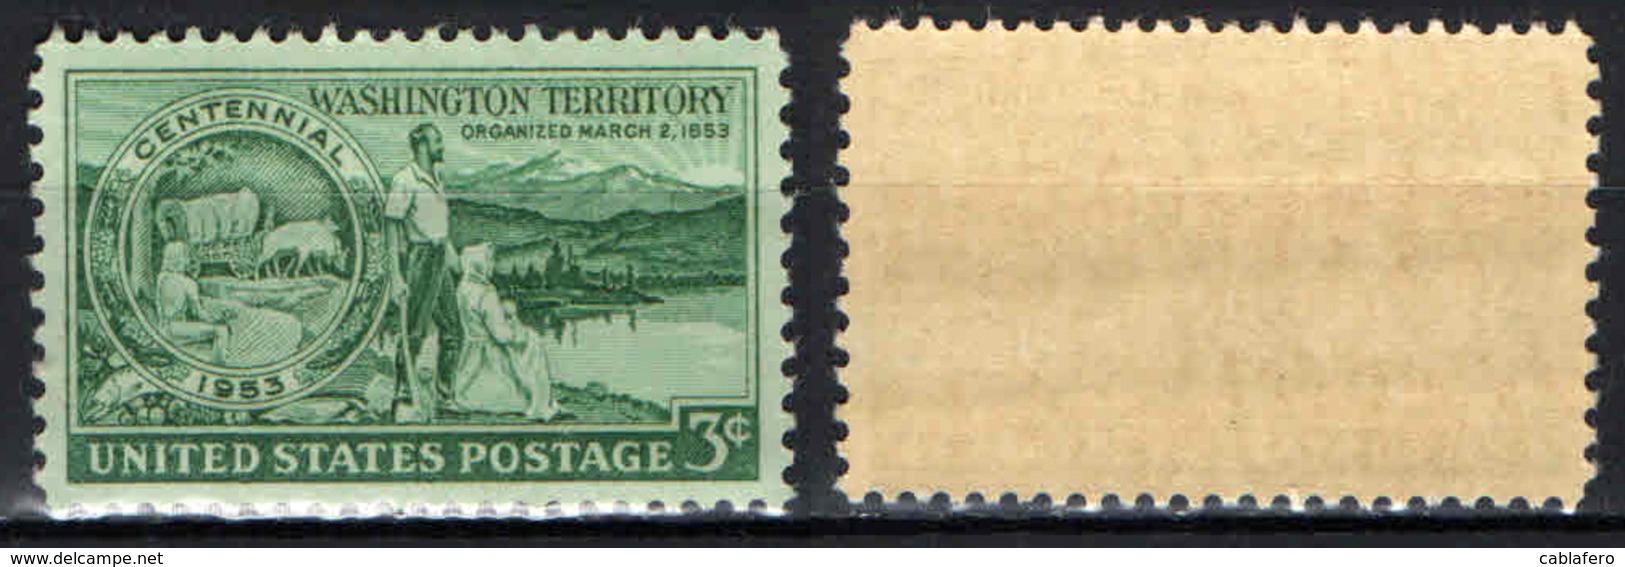 STATI UNITI - 1953 - CENTENARIO DEL TERRITORIO DI WASHINGTON - MNH - Unused Stamps